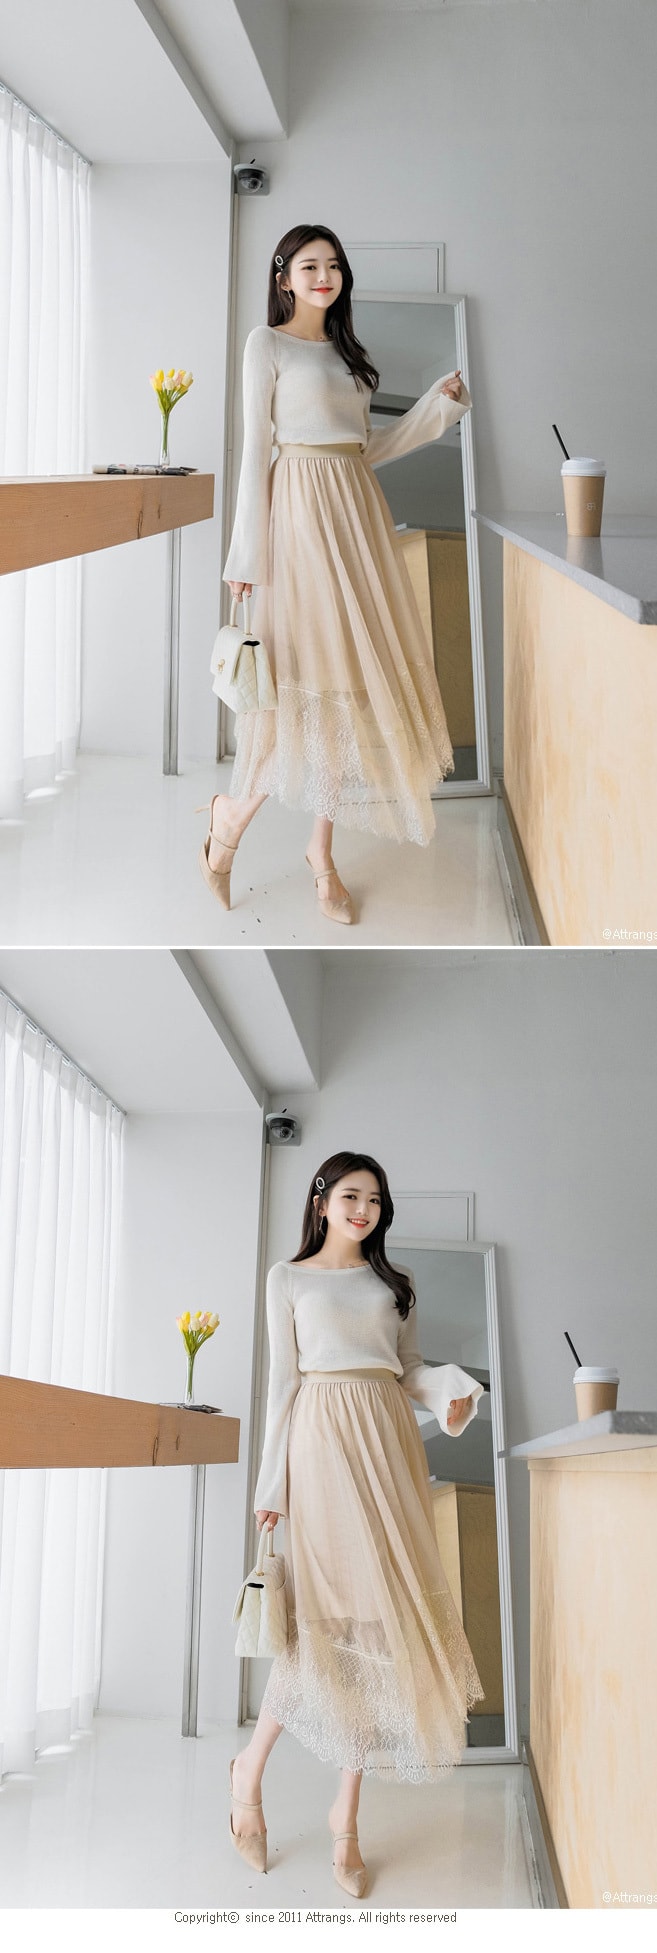 【韩国直邮】ATTRANGS 蕾丝边薄款网纱多层蓬蓬高腰长裙 米色 均码